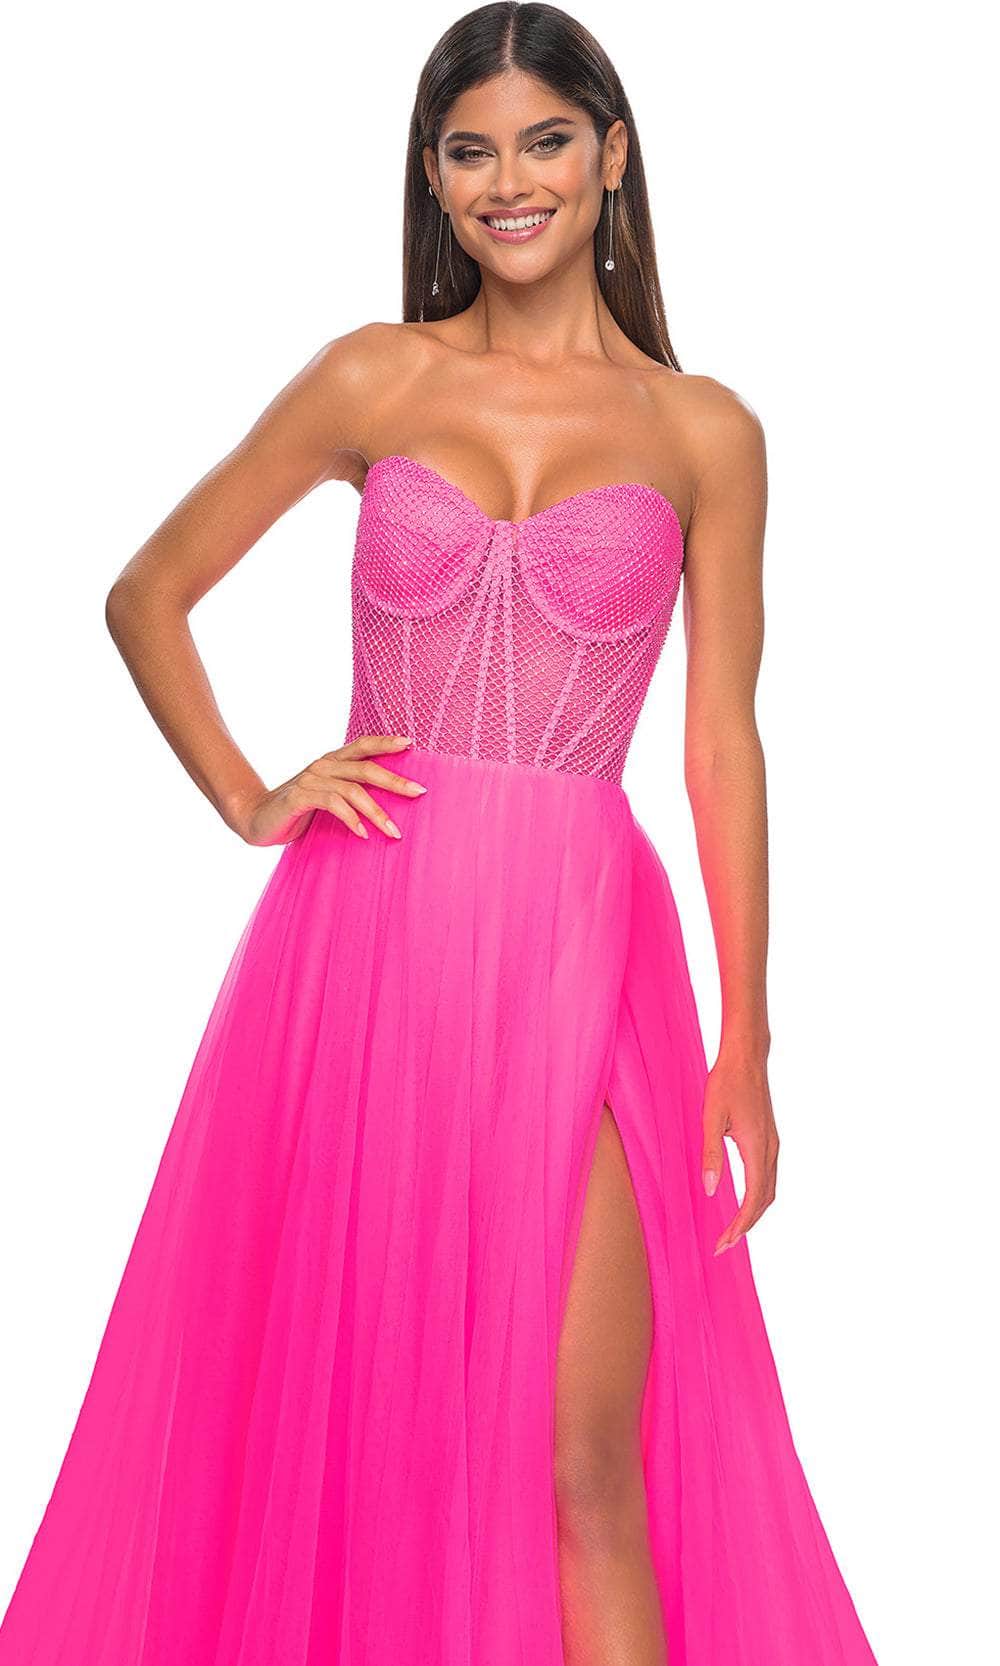 La Femme 32445 - Sweetheart Bustier Prom Dress Prom Dresses